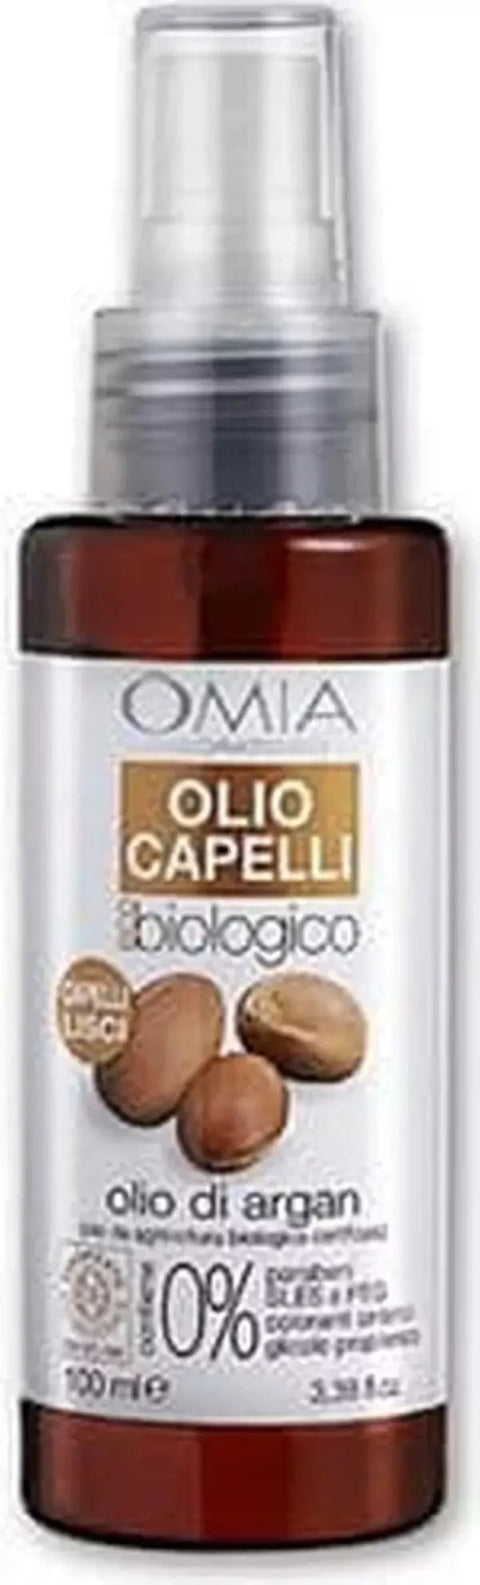 Omia Bio haarolie met biologische argan 100 ml - Hemelse-geuren.nl